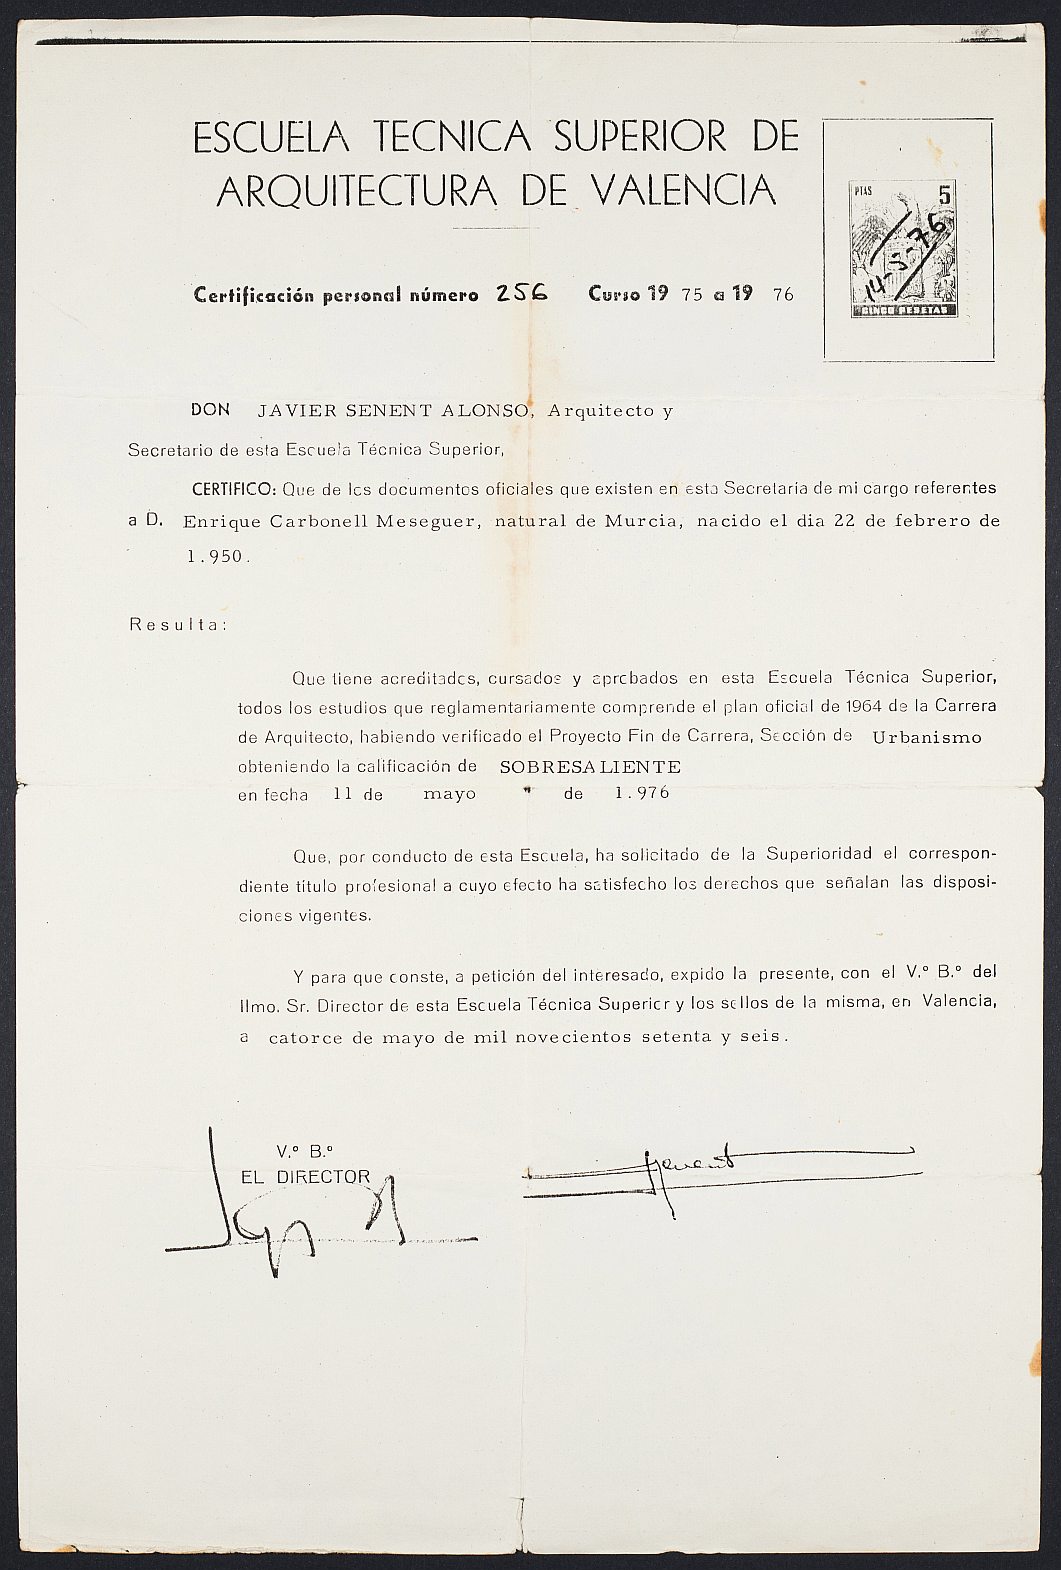 Copia de certificación de la Escuela Técnica Superior de Arquitectura de Valencia sobre el título profesional acreditado de Enrique Carbonell.